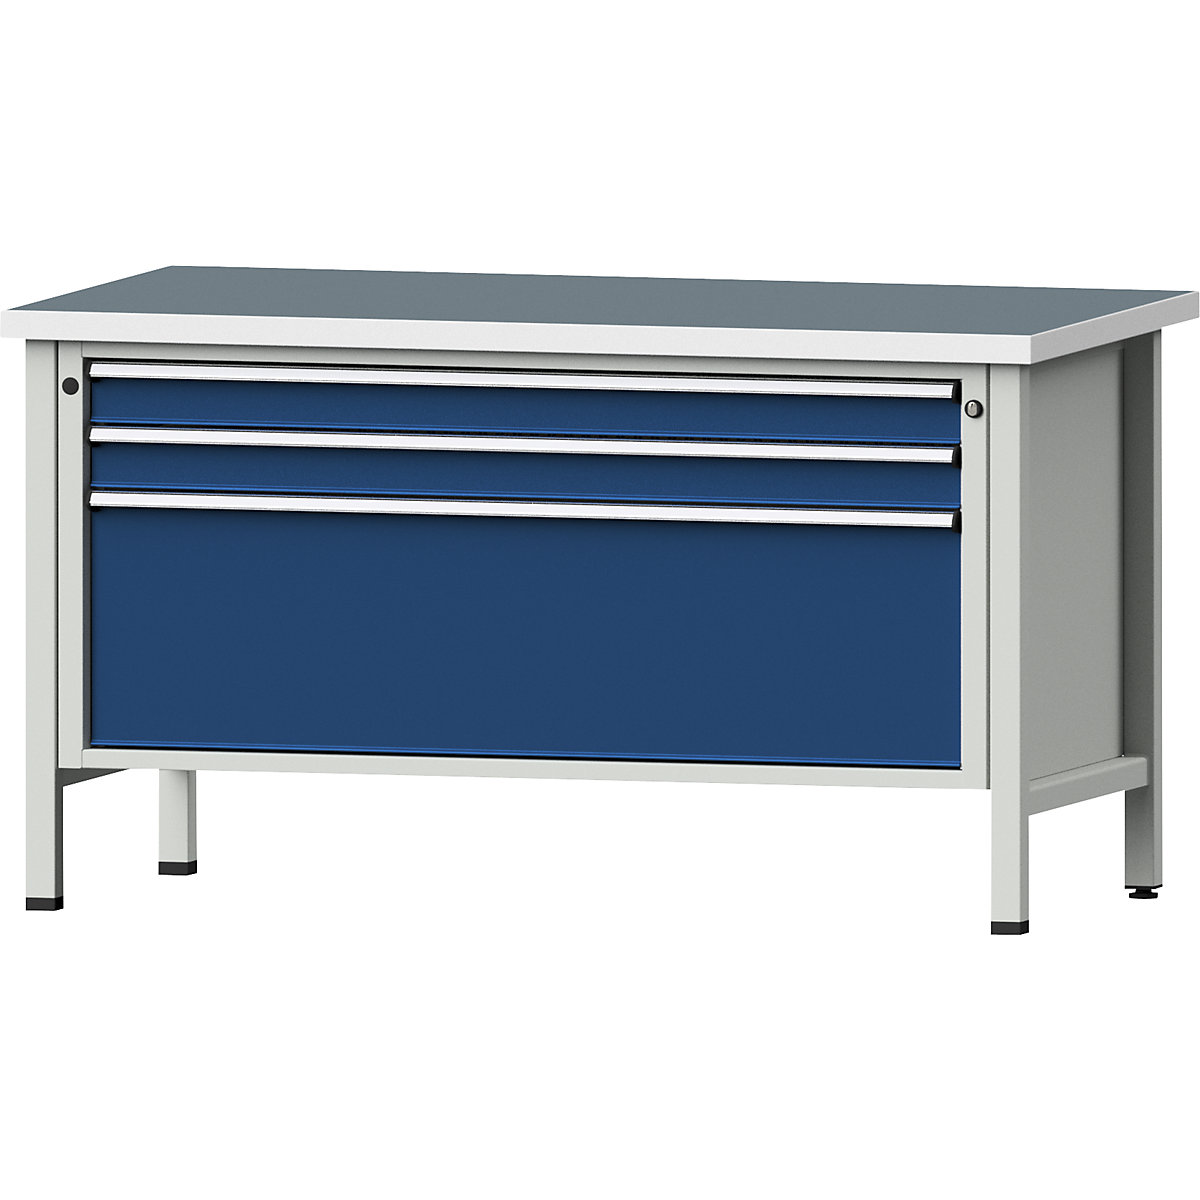 Dielenský stôl so zásuvkami XL/XXL, stojanové vyhotovenie – ANKE, šírka 1500 mm, 3 zásuvky, univerzálna doska, čelo enciánová modrá-8